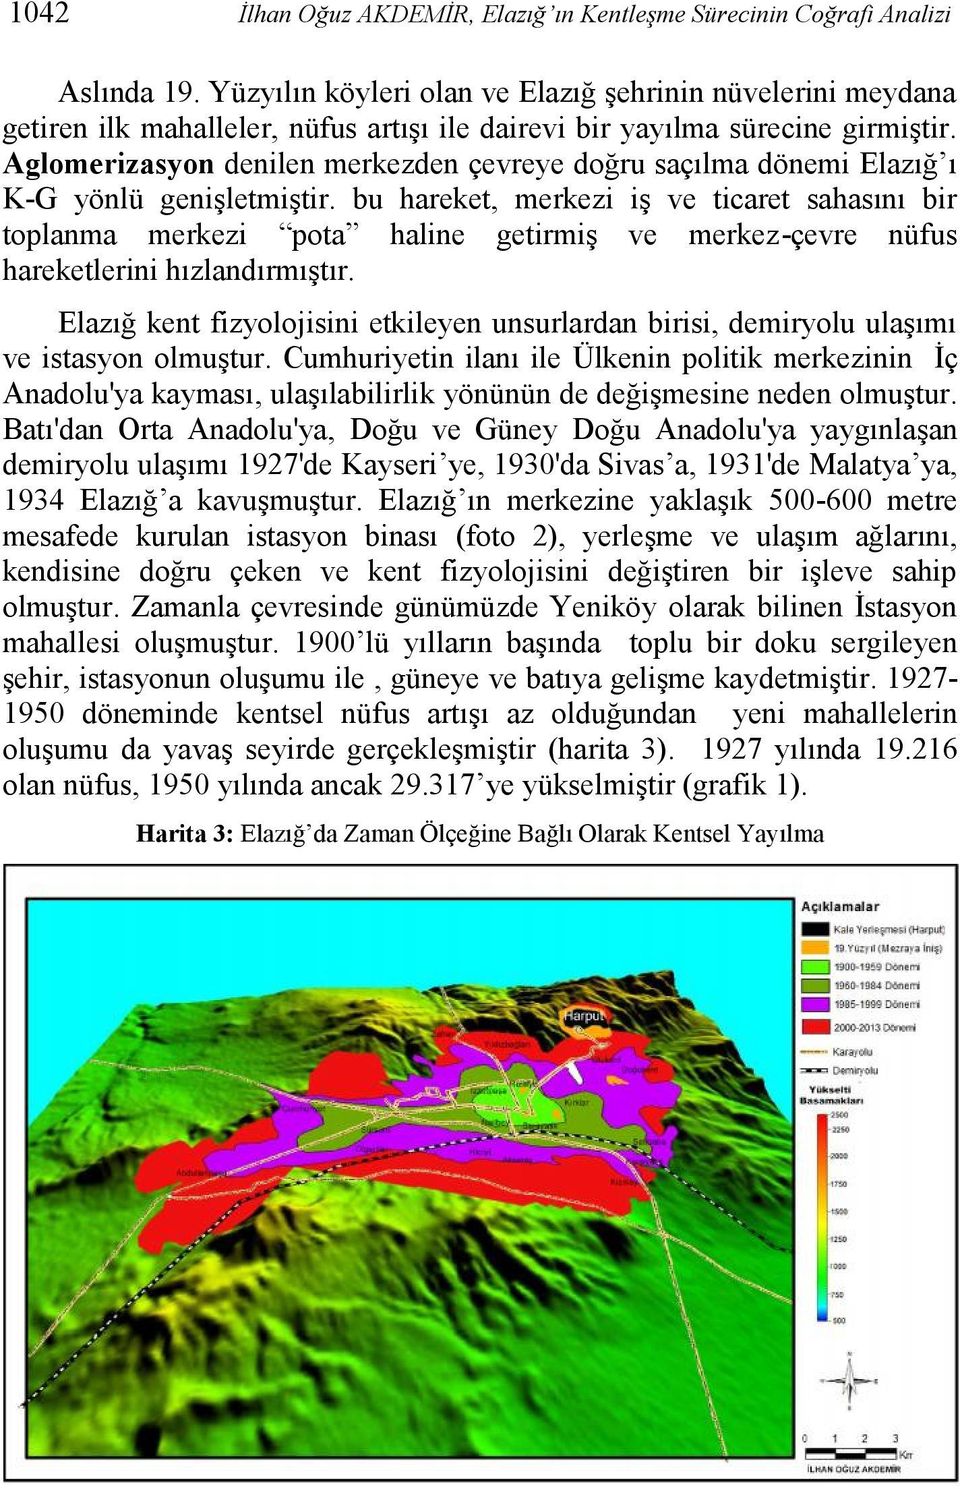 Aglomerizasyon denilen merkezden çevreye doğru saçılma dönemi Elazığ ı K-G yönlü genişletmiştir.